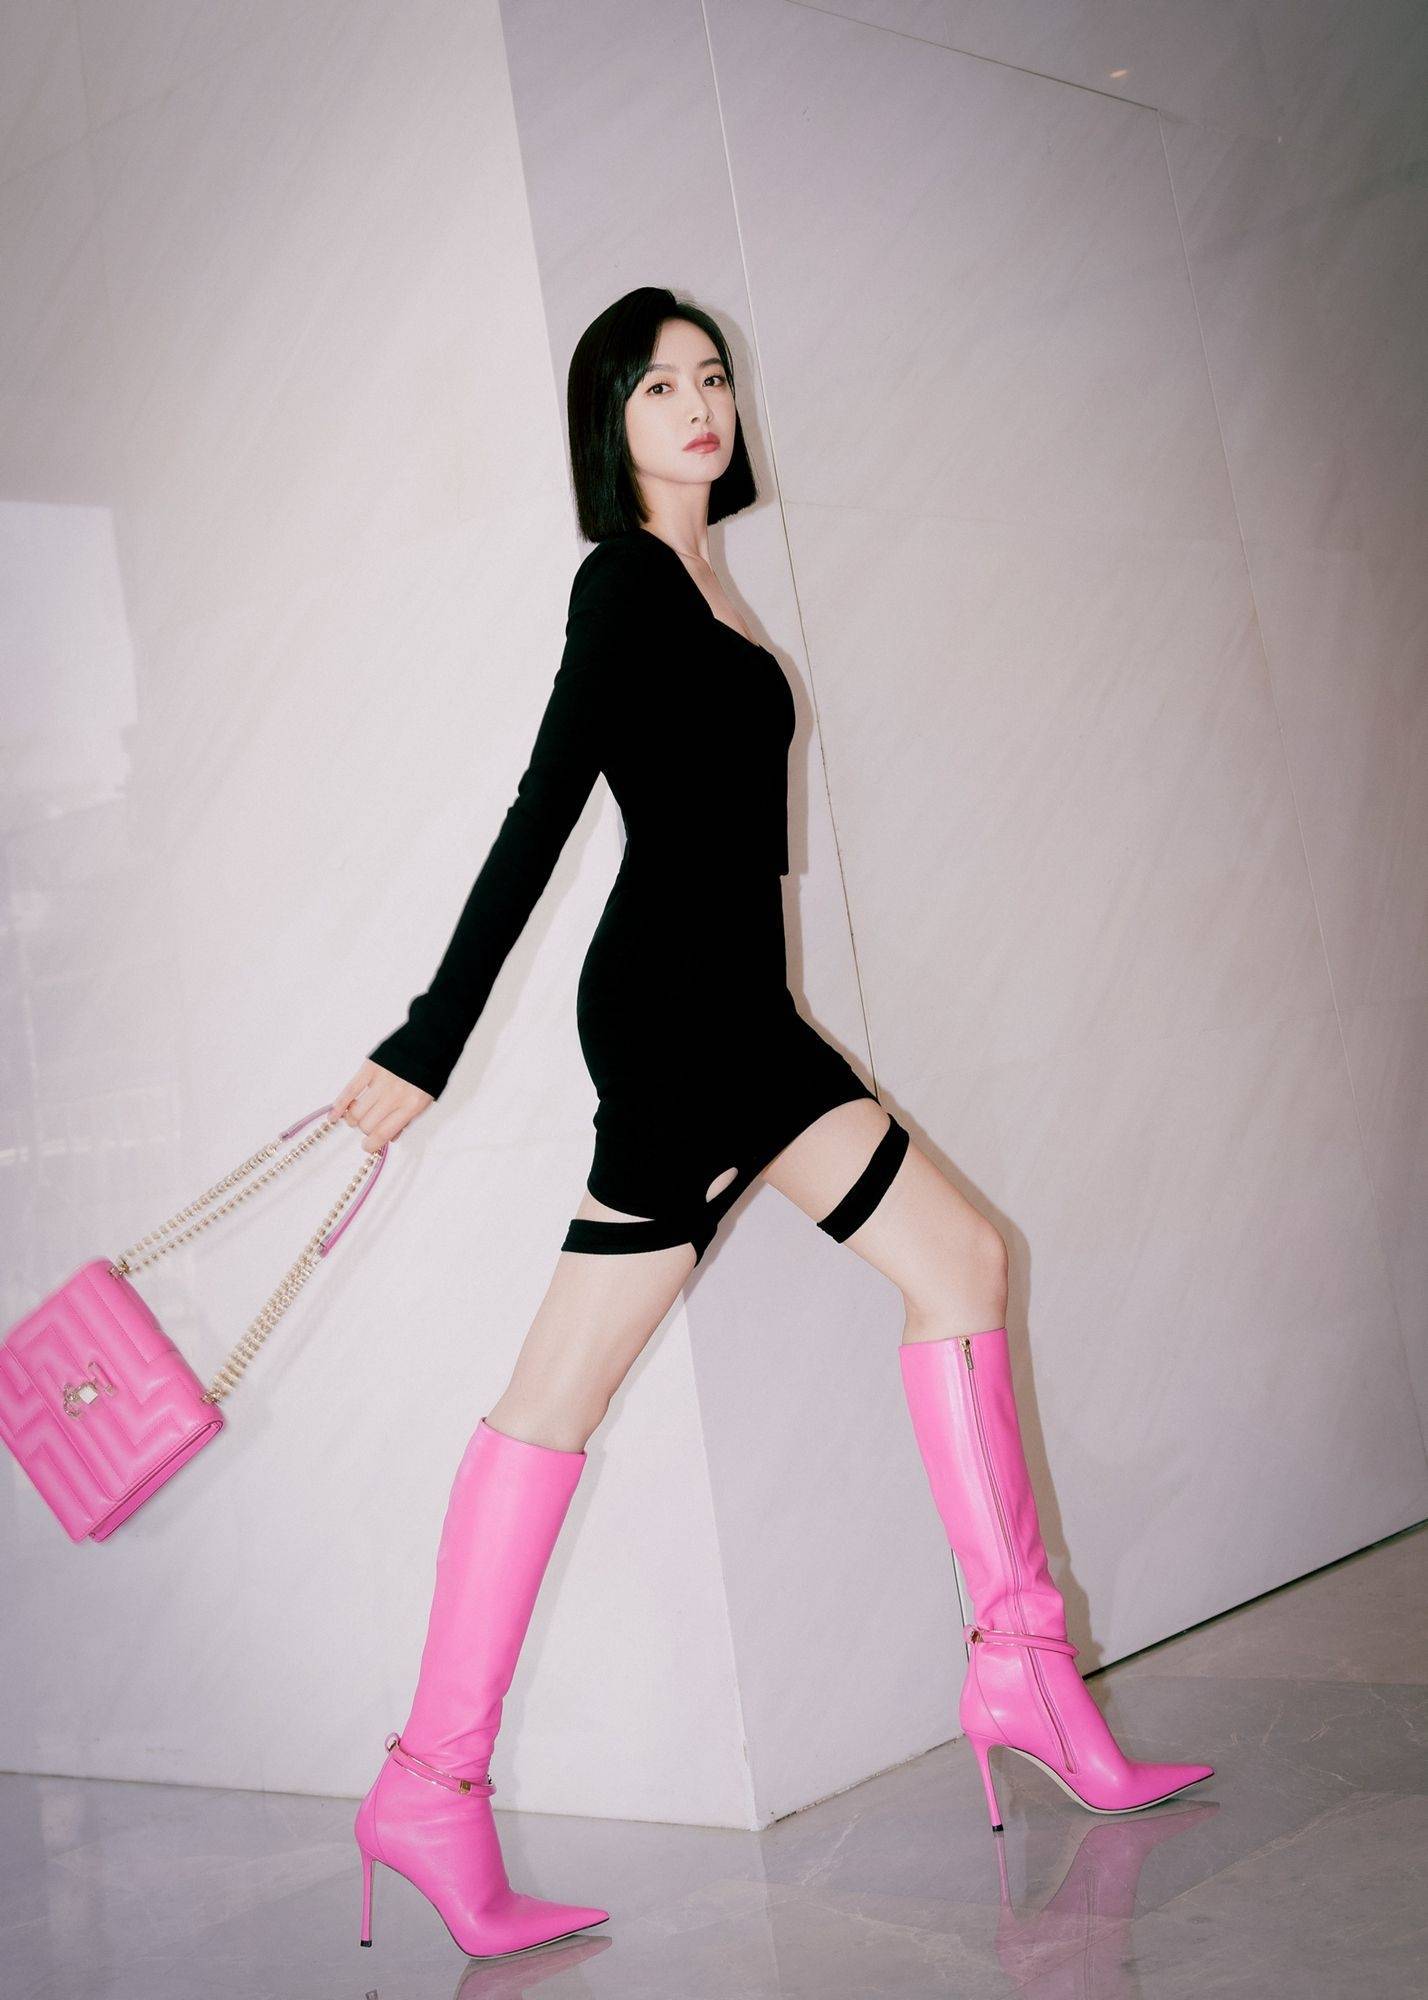 宋茜黑色连衣裙粉红长筒靴性感写真